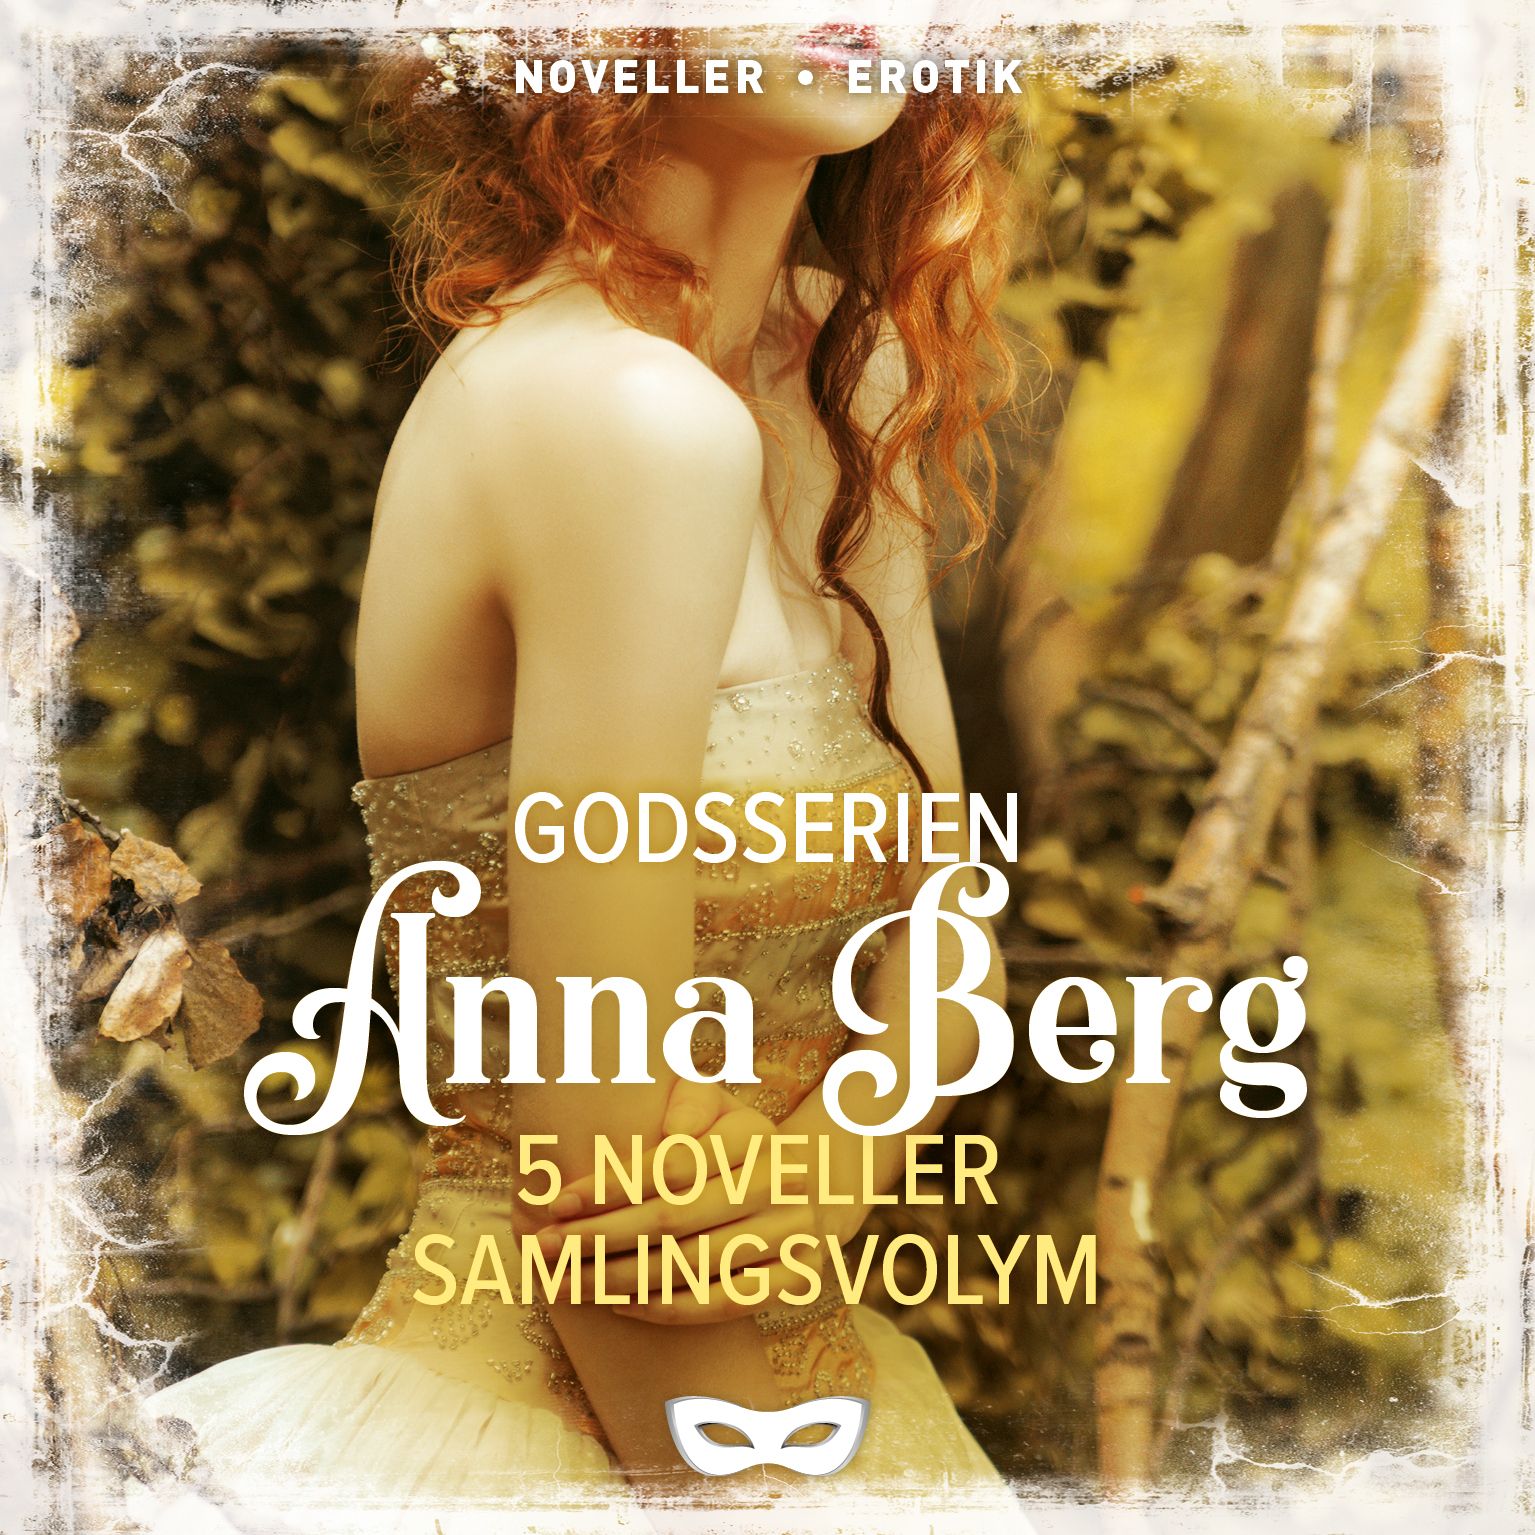 Godsserien 5 noveller Samlingsvolym, audiobook by Anna Berg